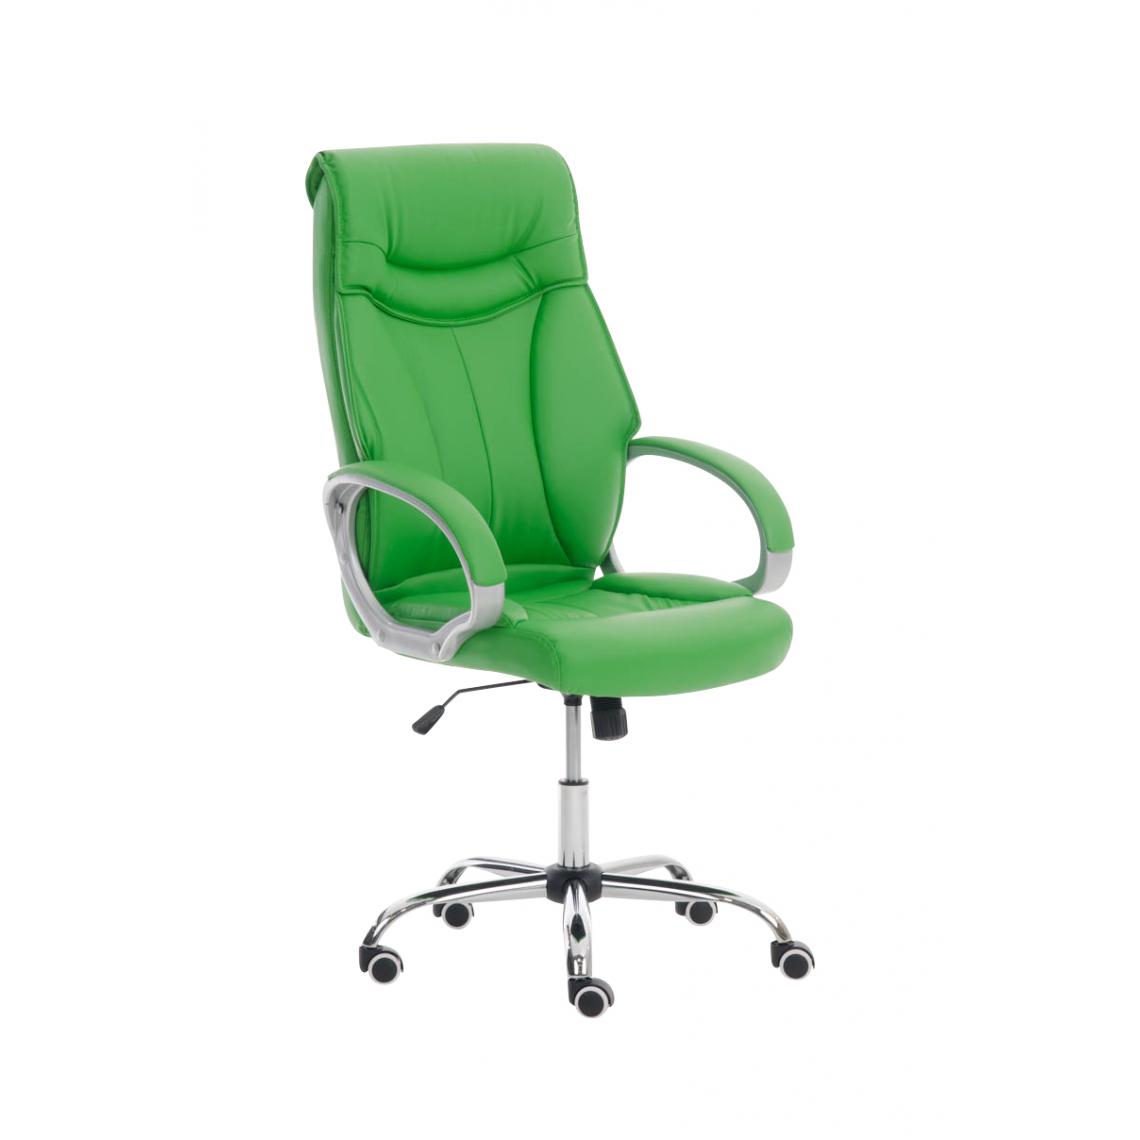 Icaverne - Joli Chaise de bureau selection Manama couleur vert - Chaises